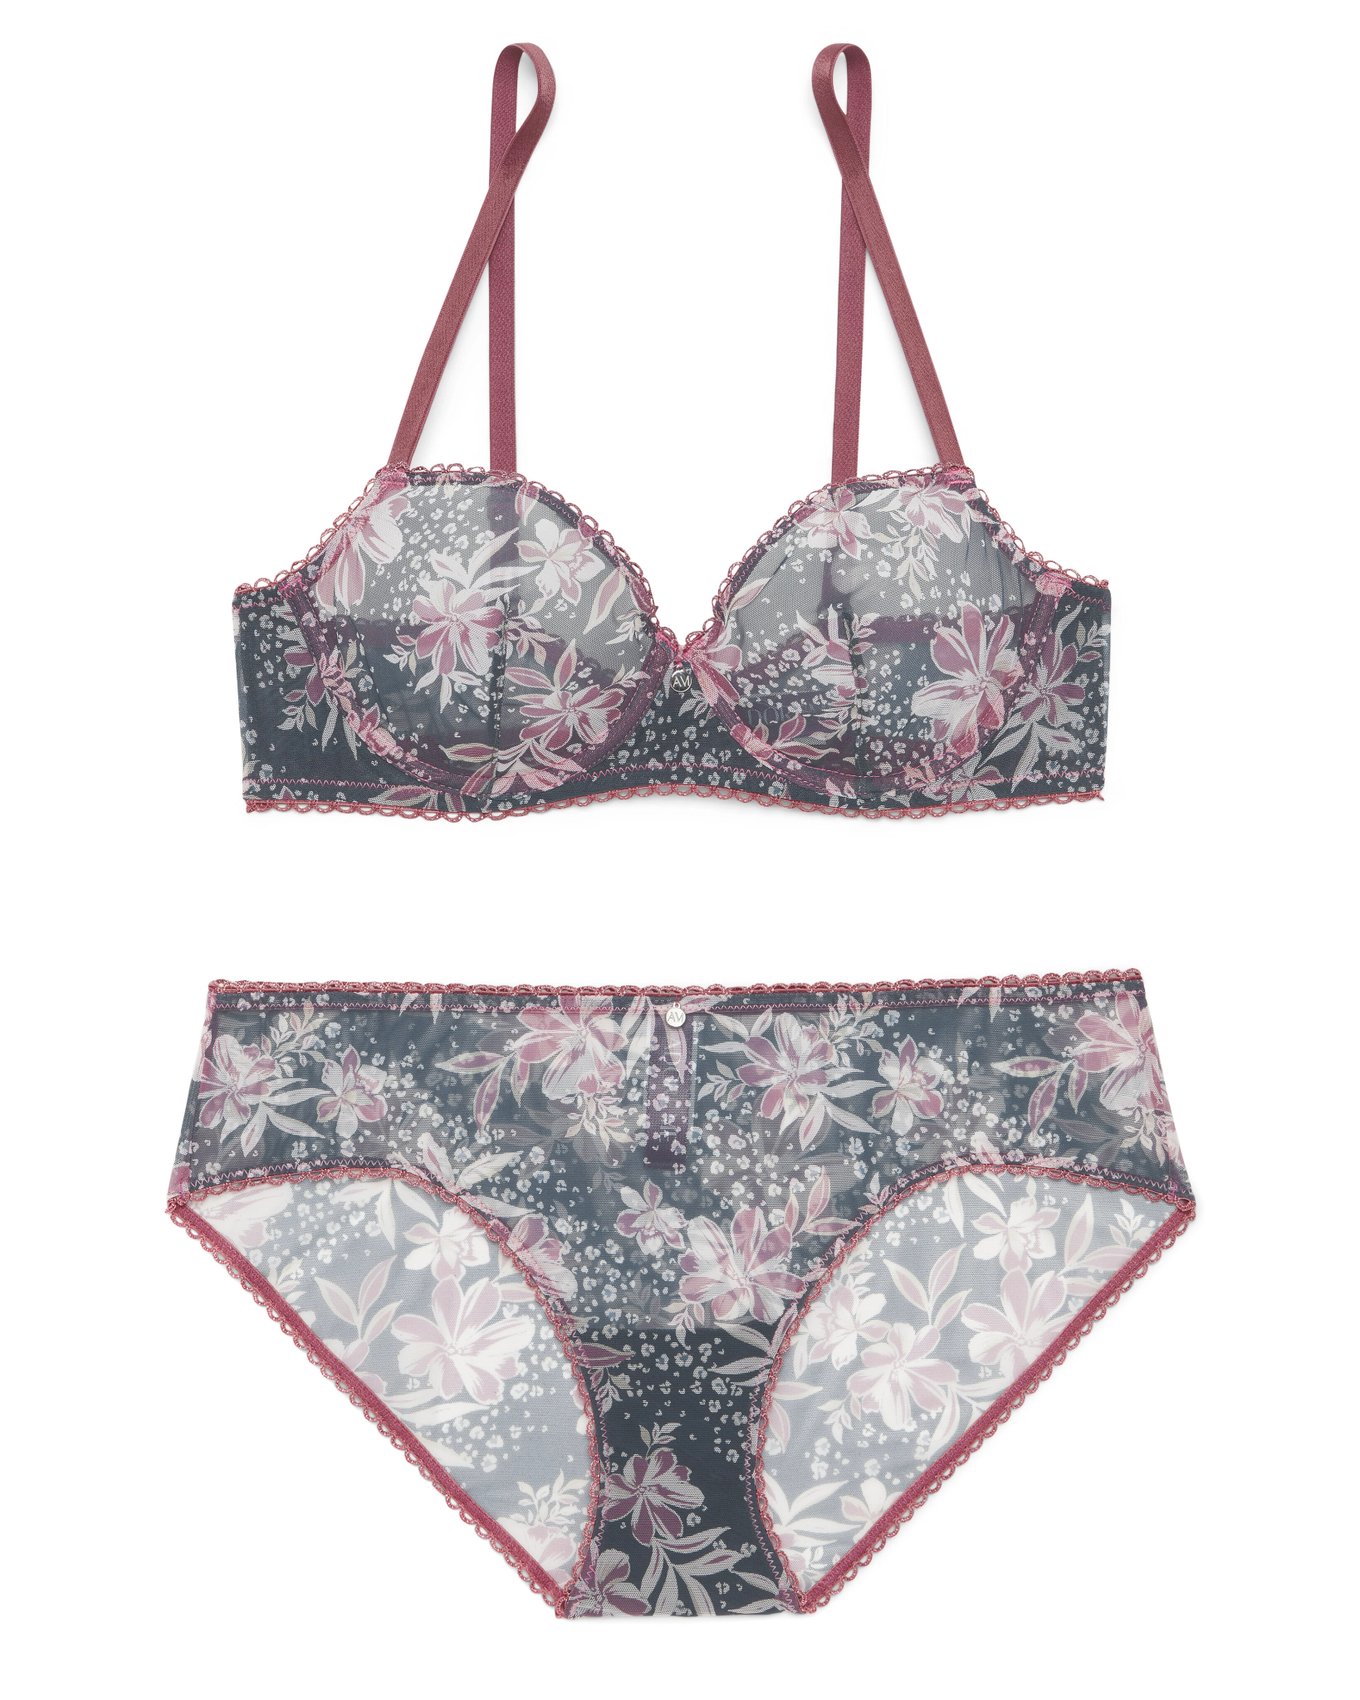 Plus Size Cute Lingerie Set, Women's Plus Ditsy Floral Print Contrast Lace  Bra & Panty Lingerie Two Piece Set